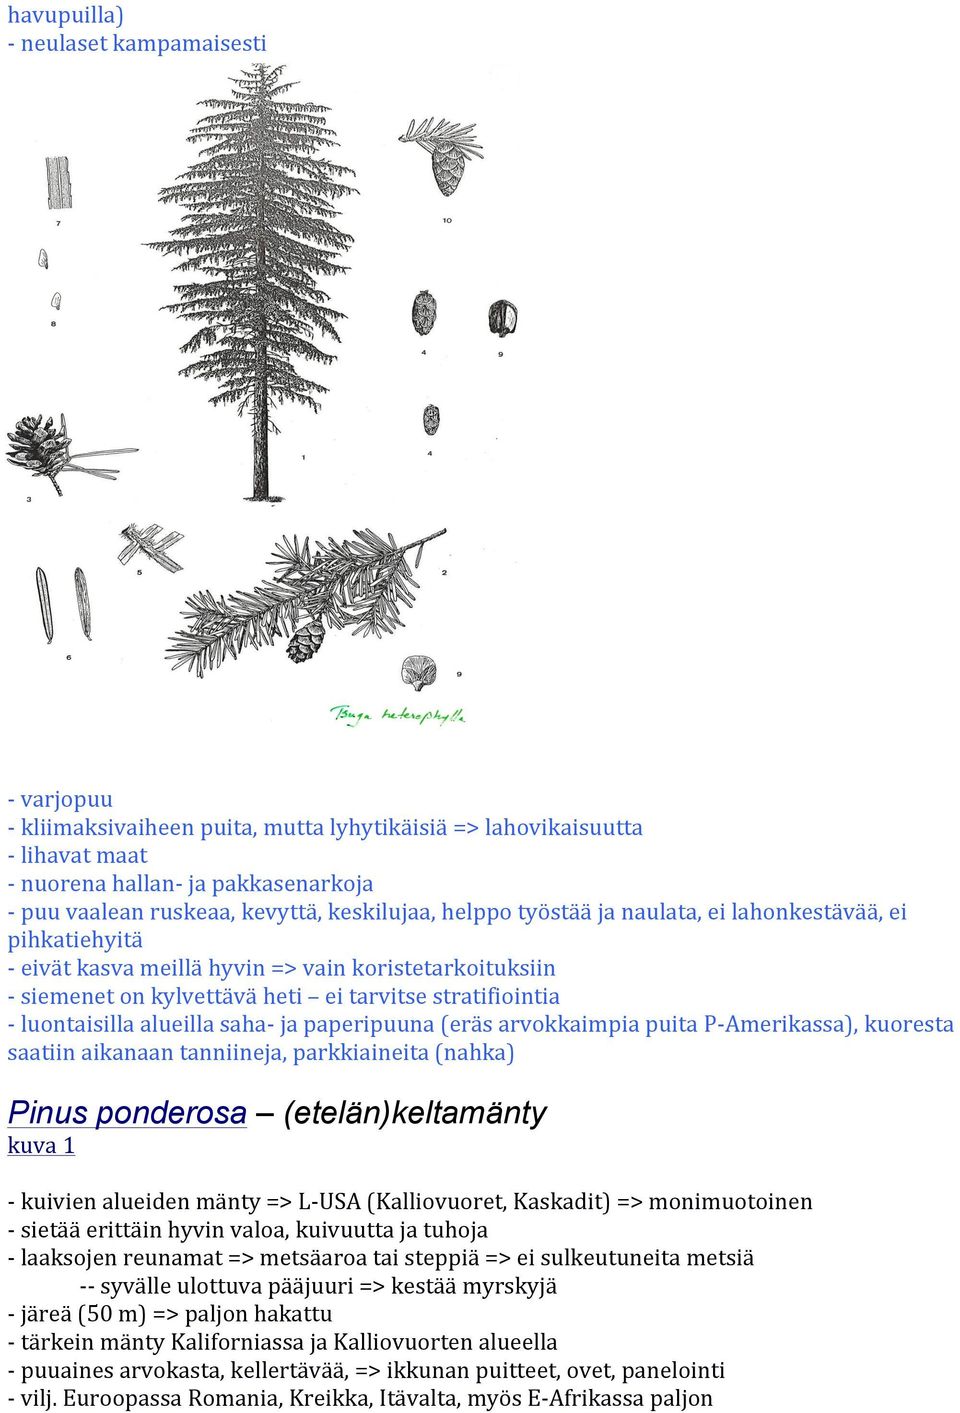 luontaisilla alueilla saha- ja paperipuuna (eräs arvokkaimpia puita P- Amerikassa), kuoresta saatiin aikanaan tanniineja, parkkiaineita (nahka) Pinus ponderosa (etelän)keltamänty - kuivien alueiden